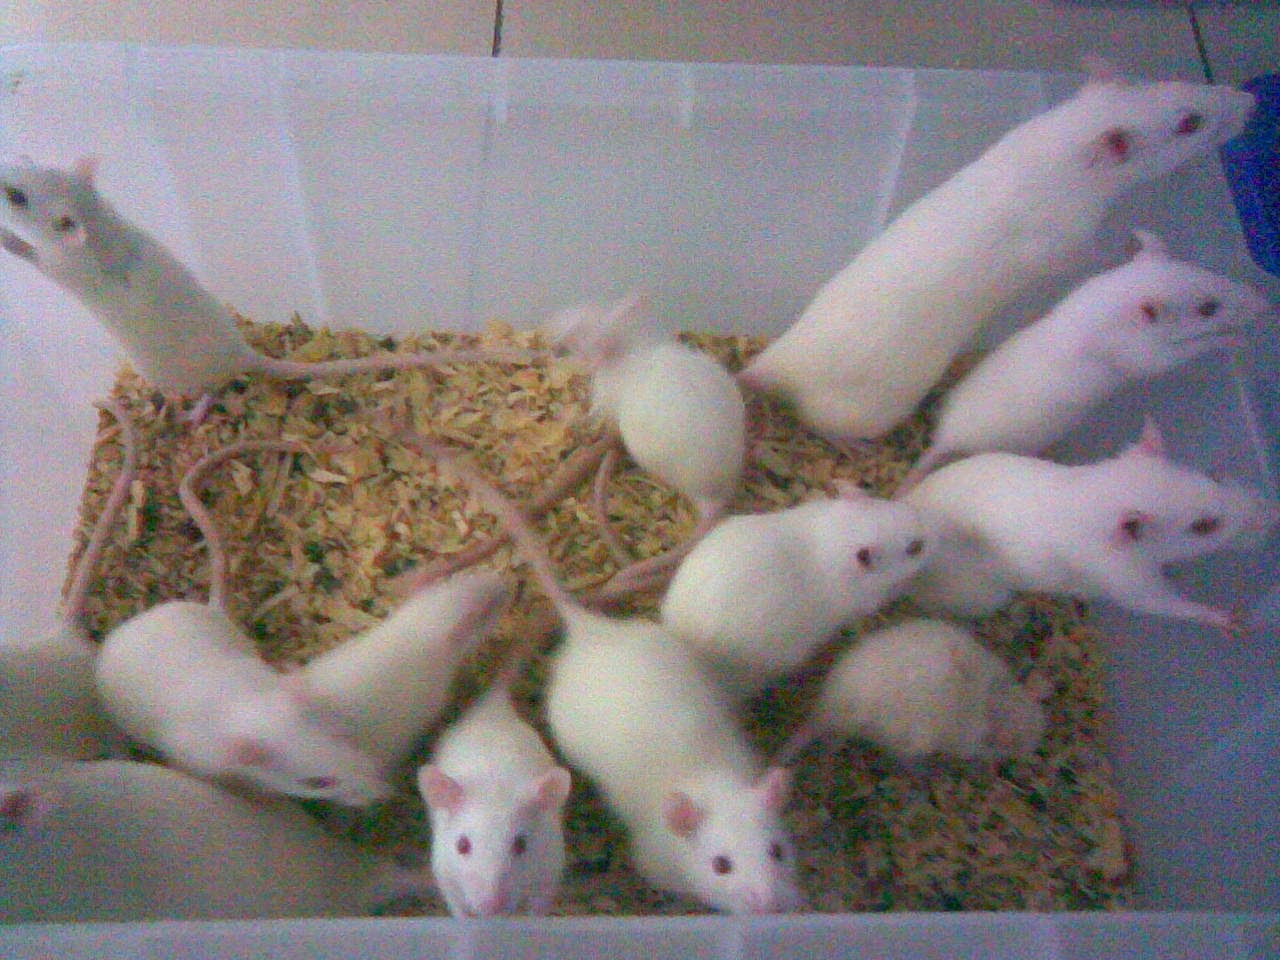 tikus putih jual tikus putih budidaya tikus putih ternak